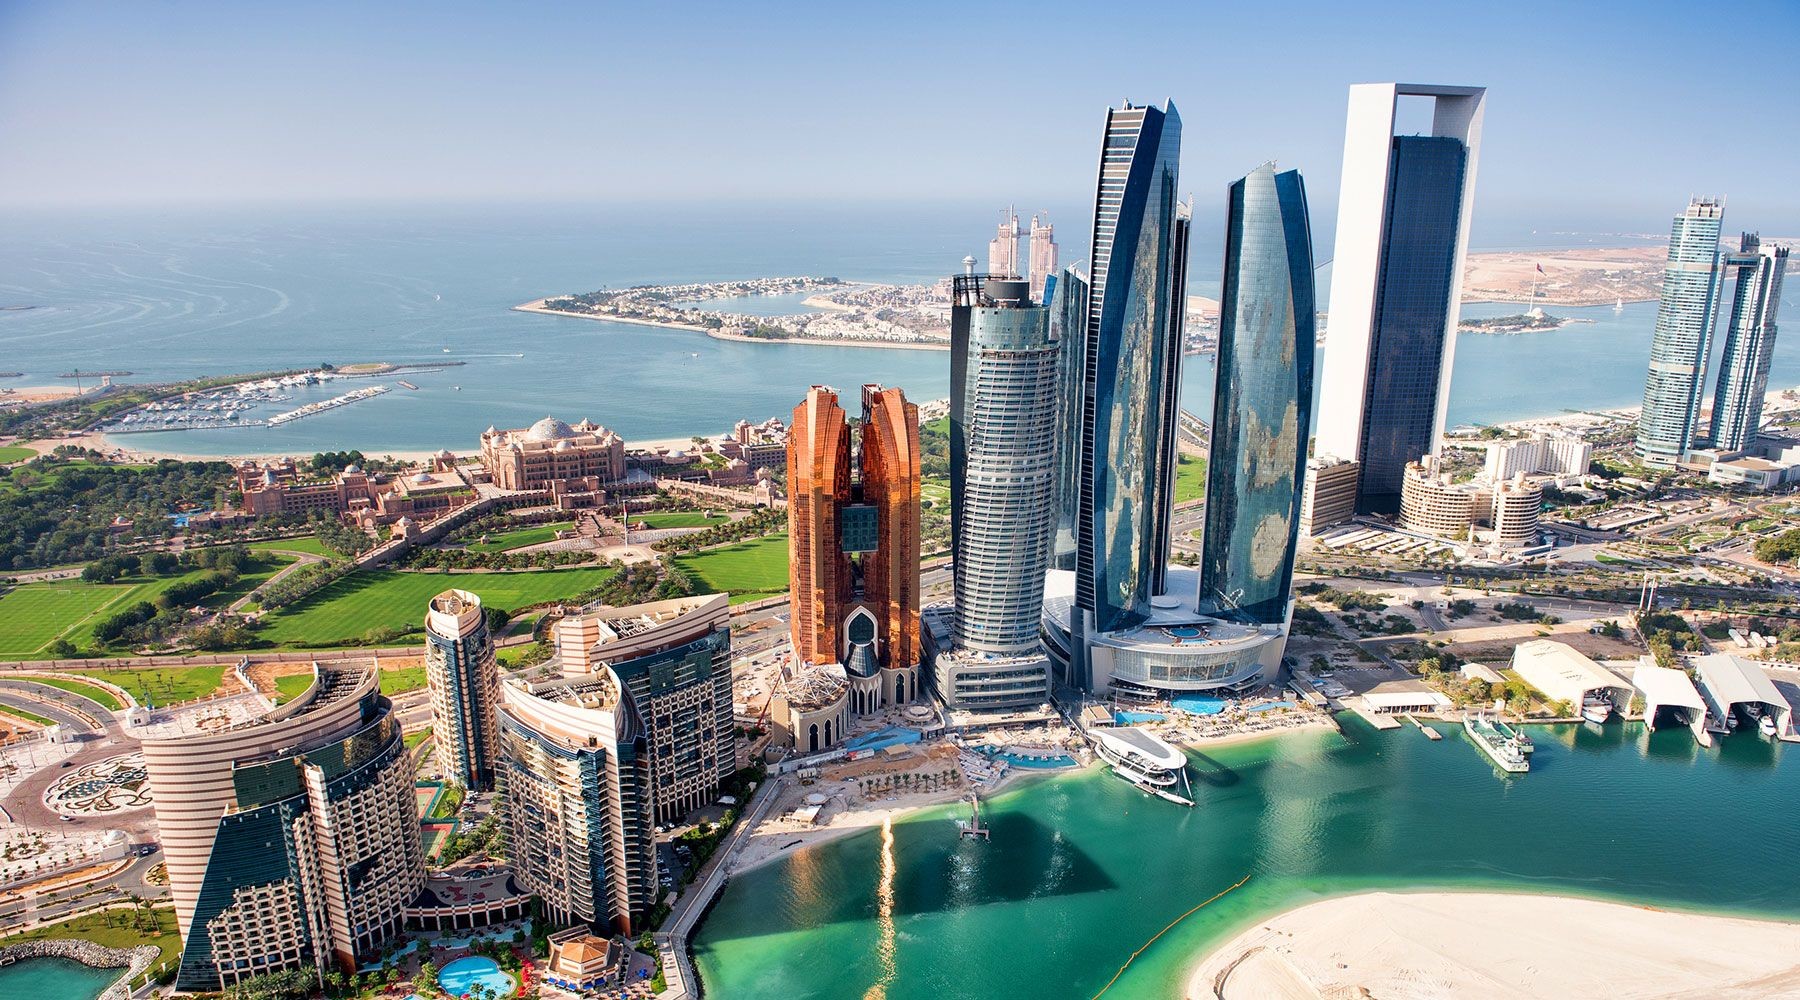 الإمارات أفضل دولة إقليمياً في الاستثمار وممارسة الأعمال وبريطانيا الثانية عالمياً 